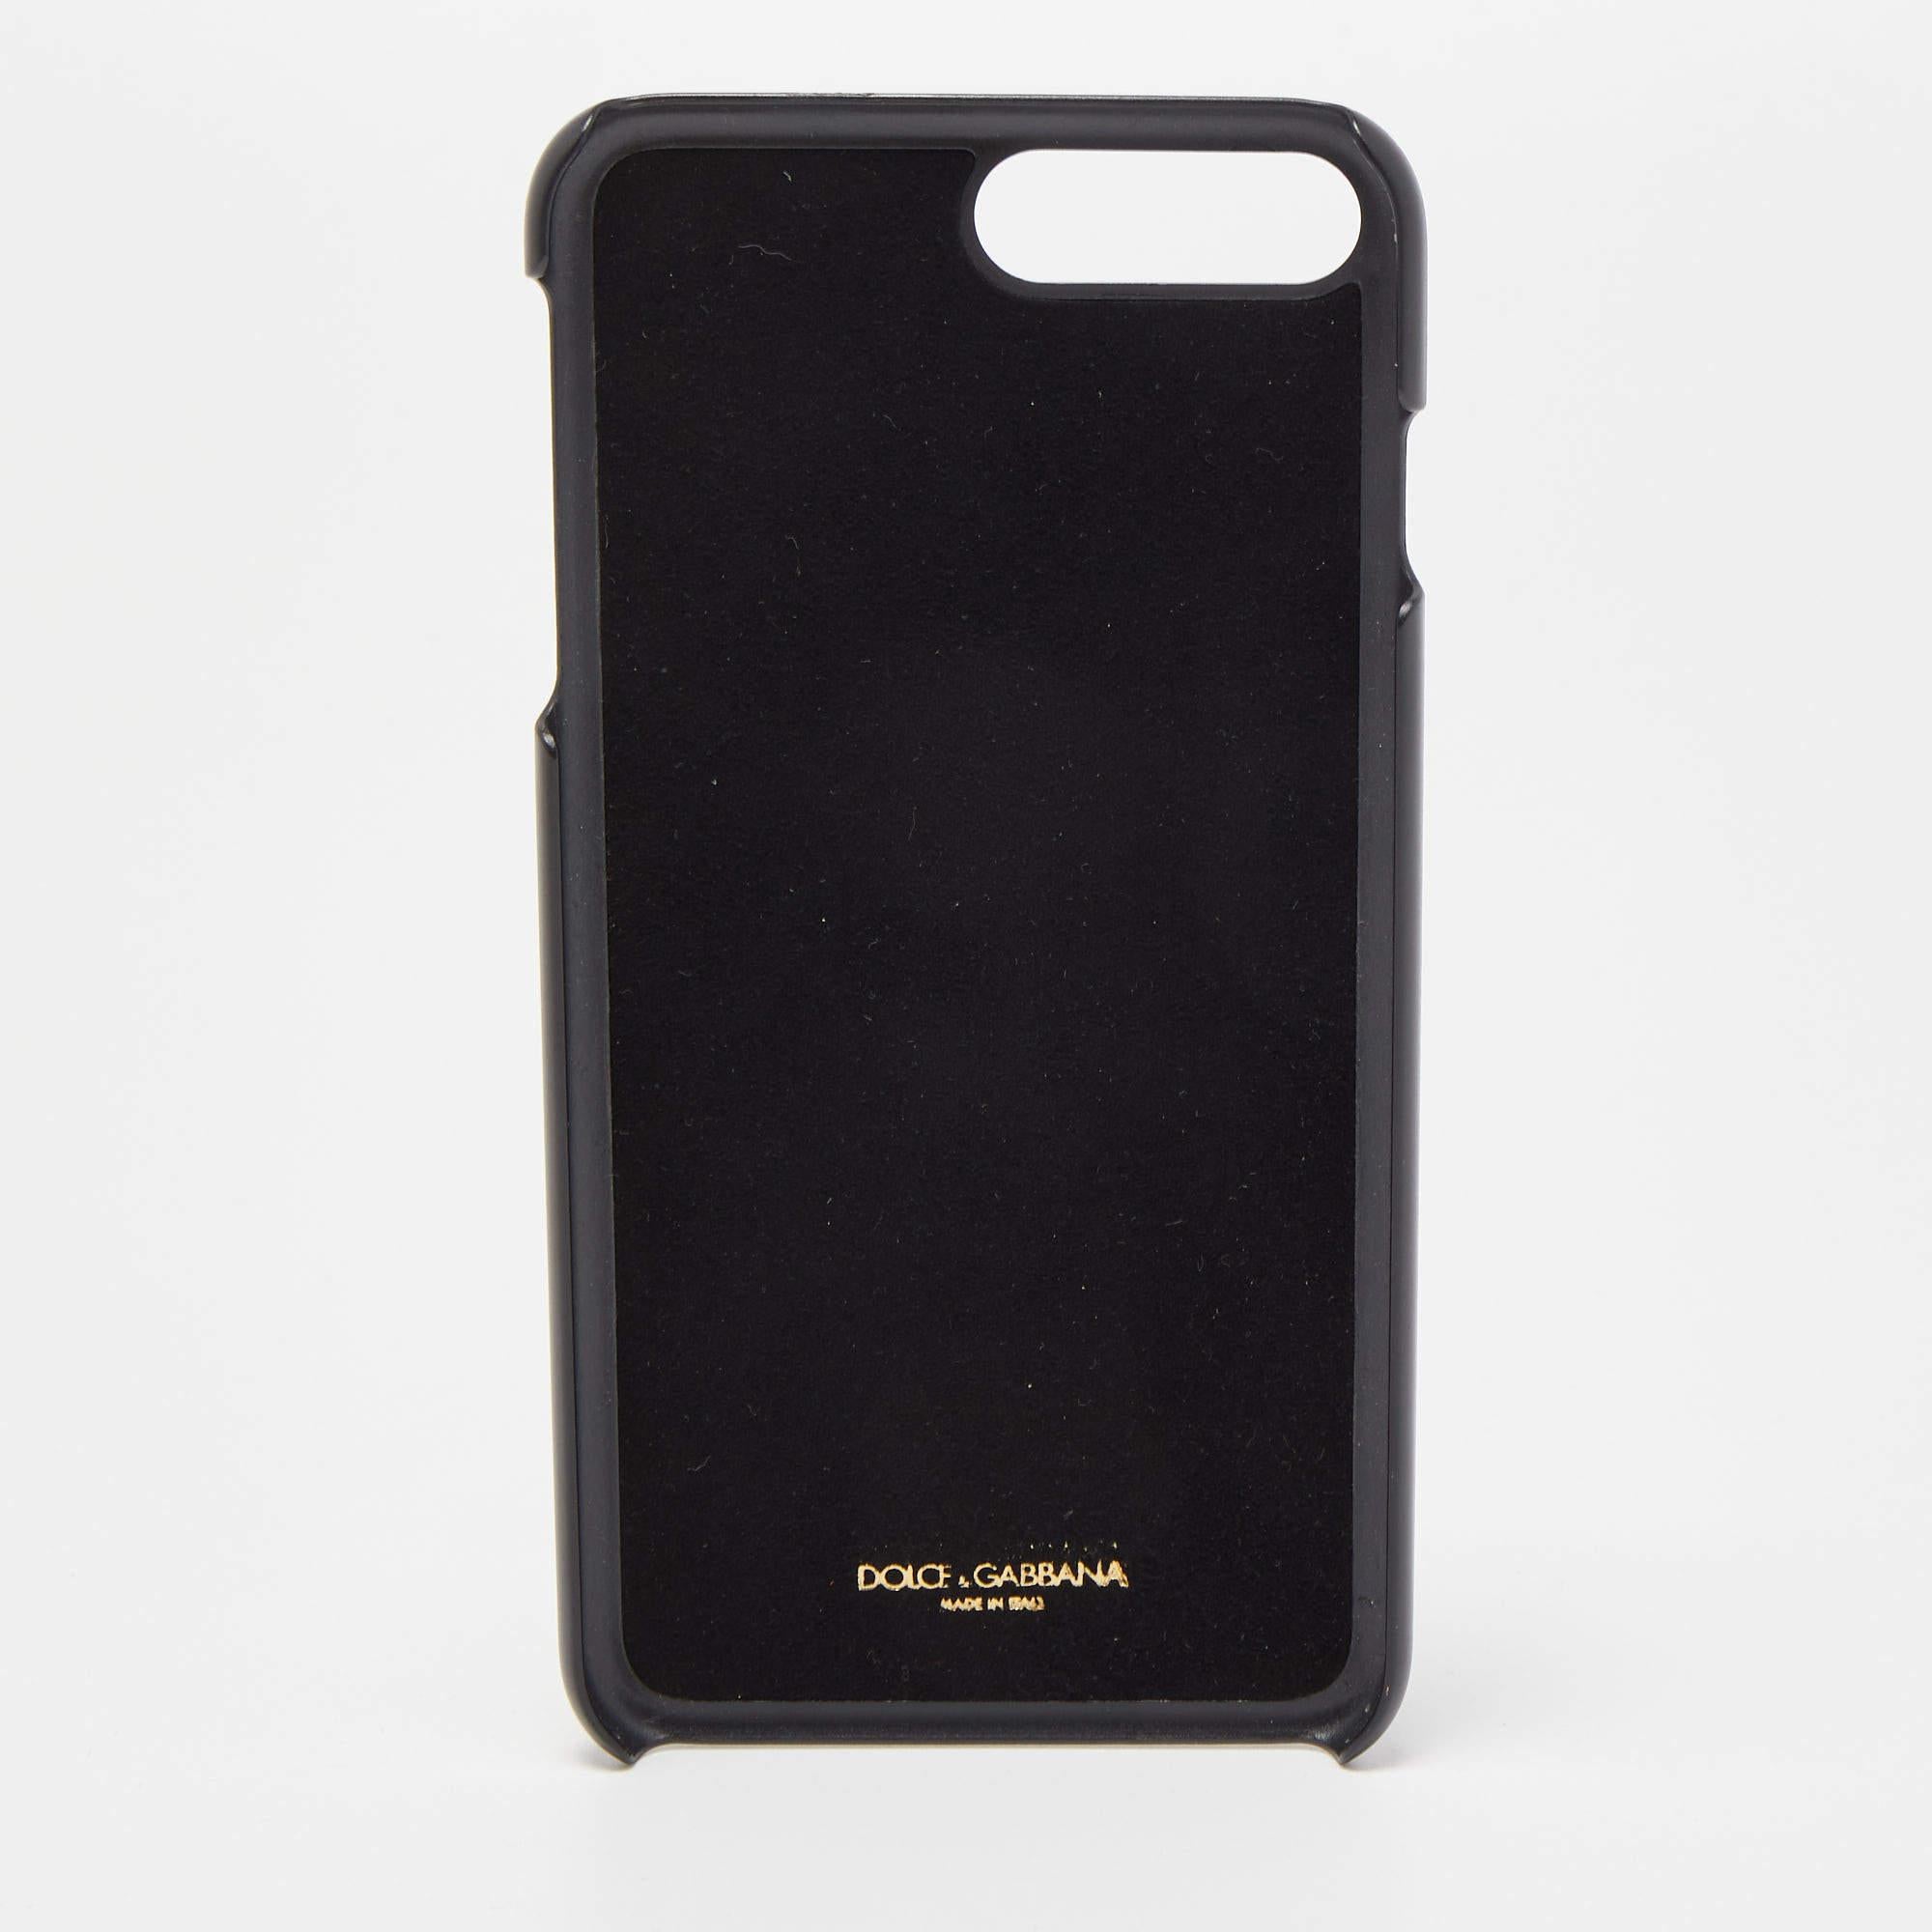 L'étui Dolce & Gabbana pour iPhone 7 plus est un accessoire luxueux. Confectionné en cuir noir, il présente des motifs ludiques à pois et est orné de cristaux étincelants, ce qui confère élégance et style à votre iPhone 7 Plus tout en le